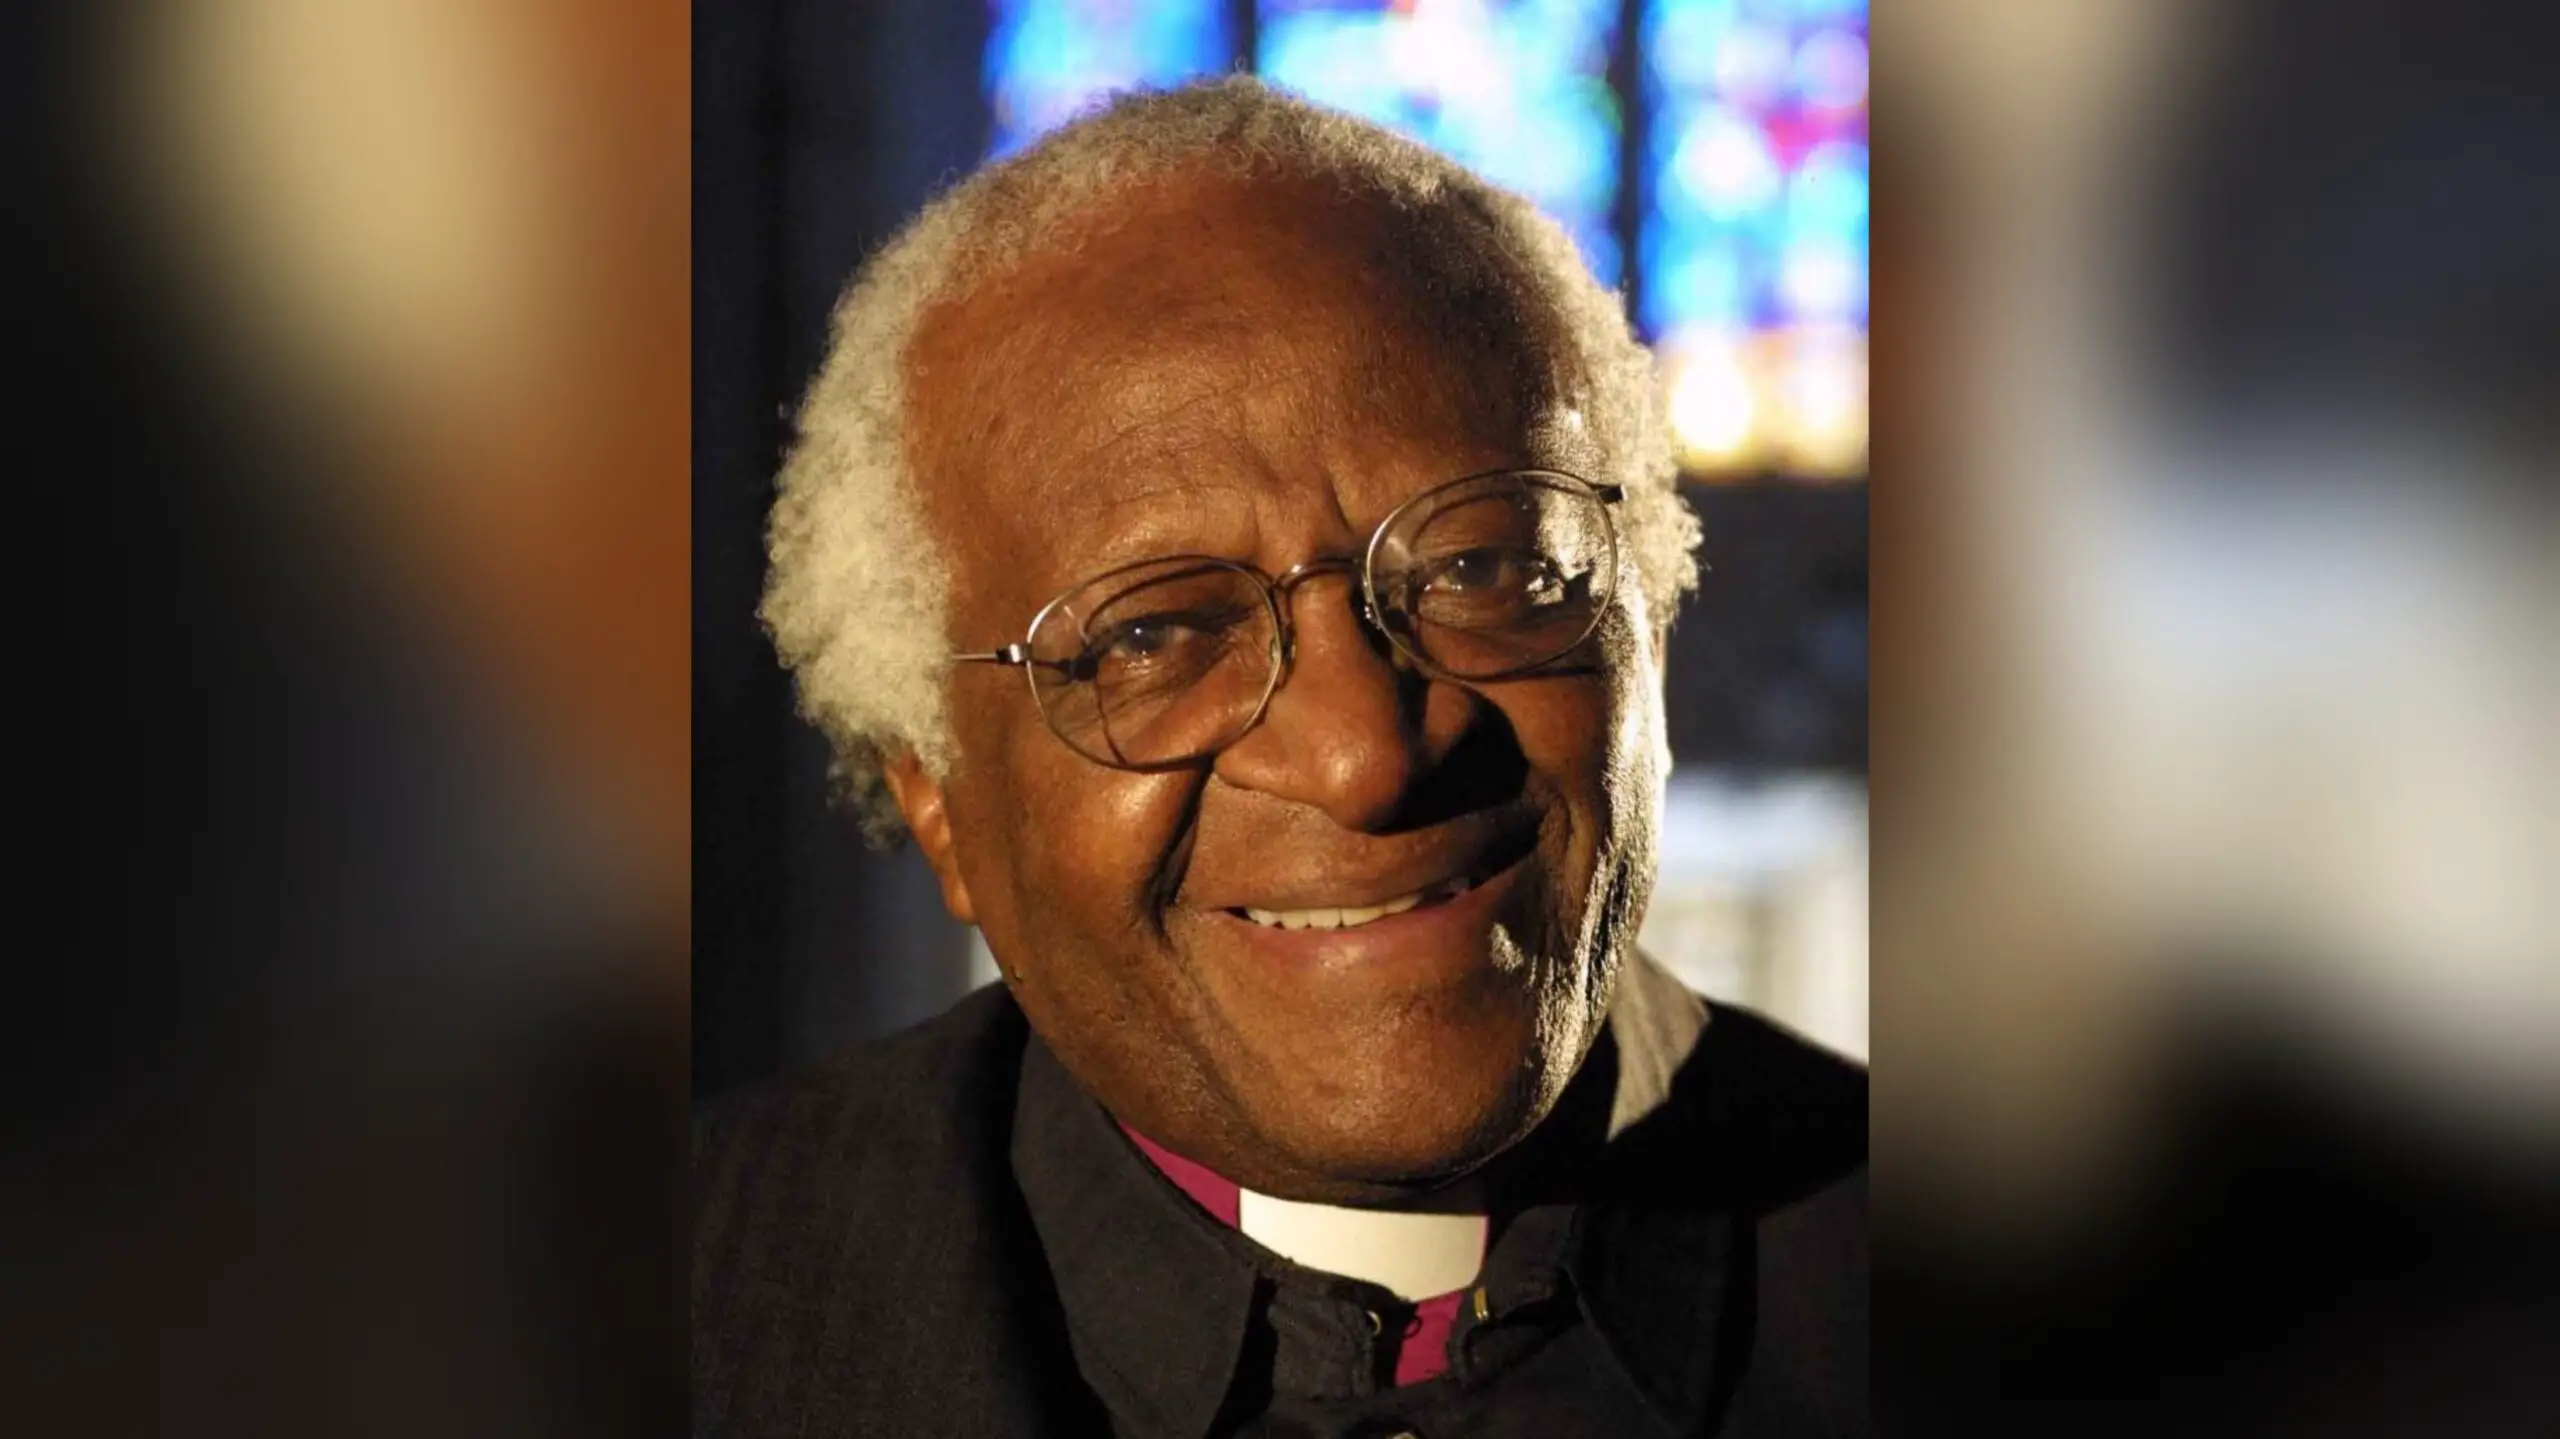 L'archevêque sud-africain Desmond Tutu, héros de la lutte contre l'apartheid, est décédé